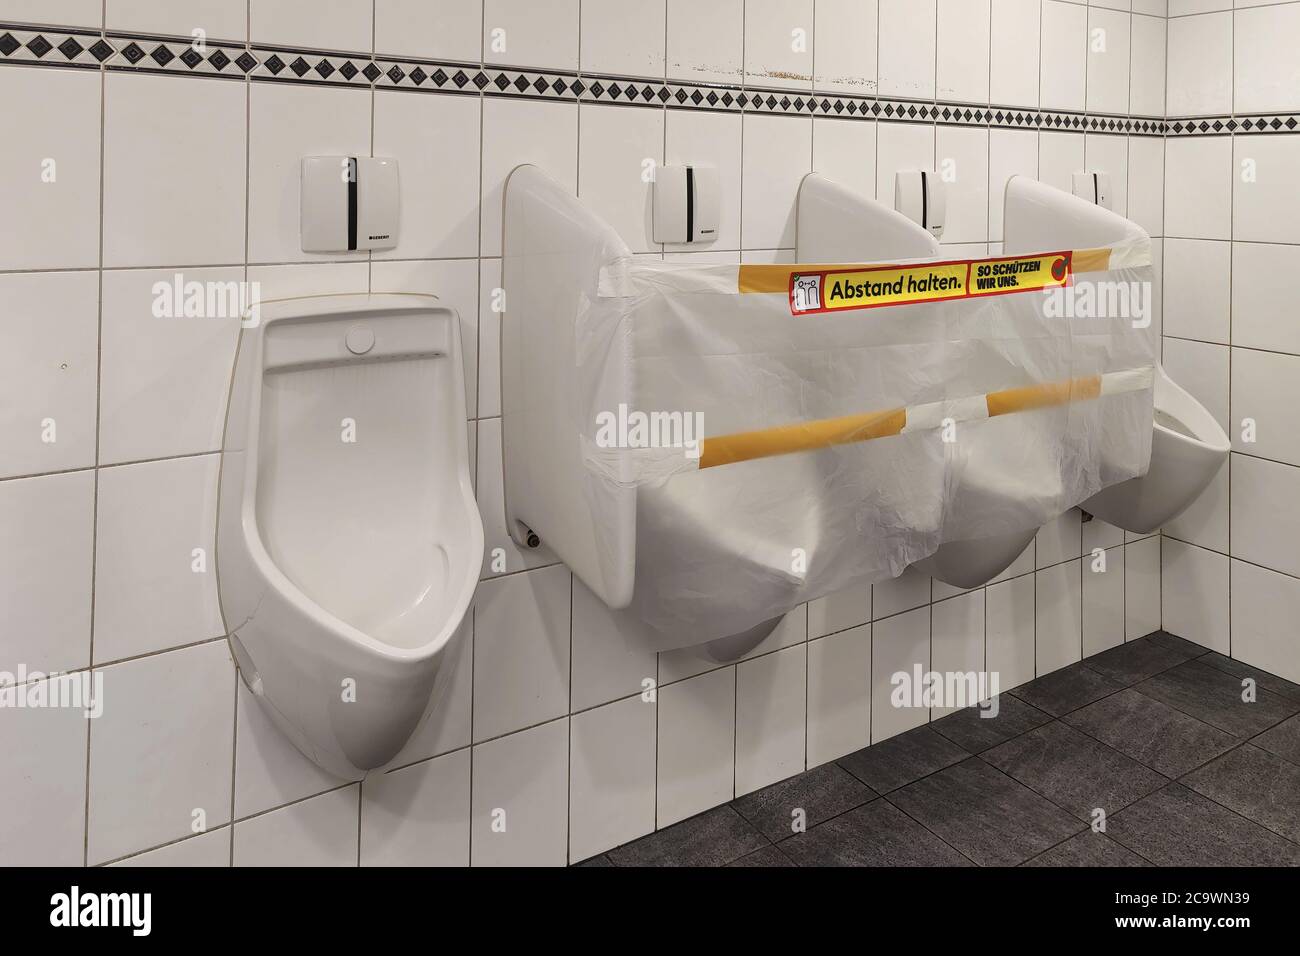 Dietikon, Zürich - Schweiz - 26. Mai 2020: Die beiden mittleren Urinale sind verschlossen und mit Kunststoff verklebt, um den Abstand in der öffentlichen Toilette zu gewährleisten Stockfoto